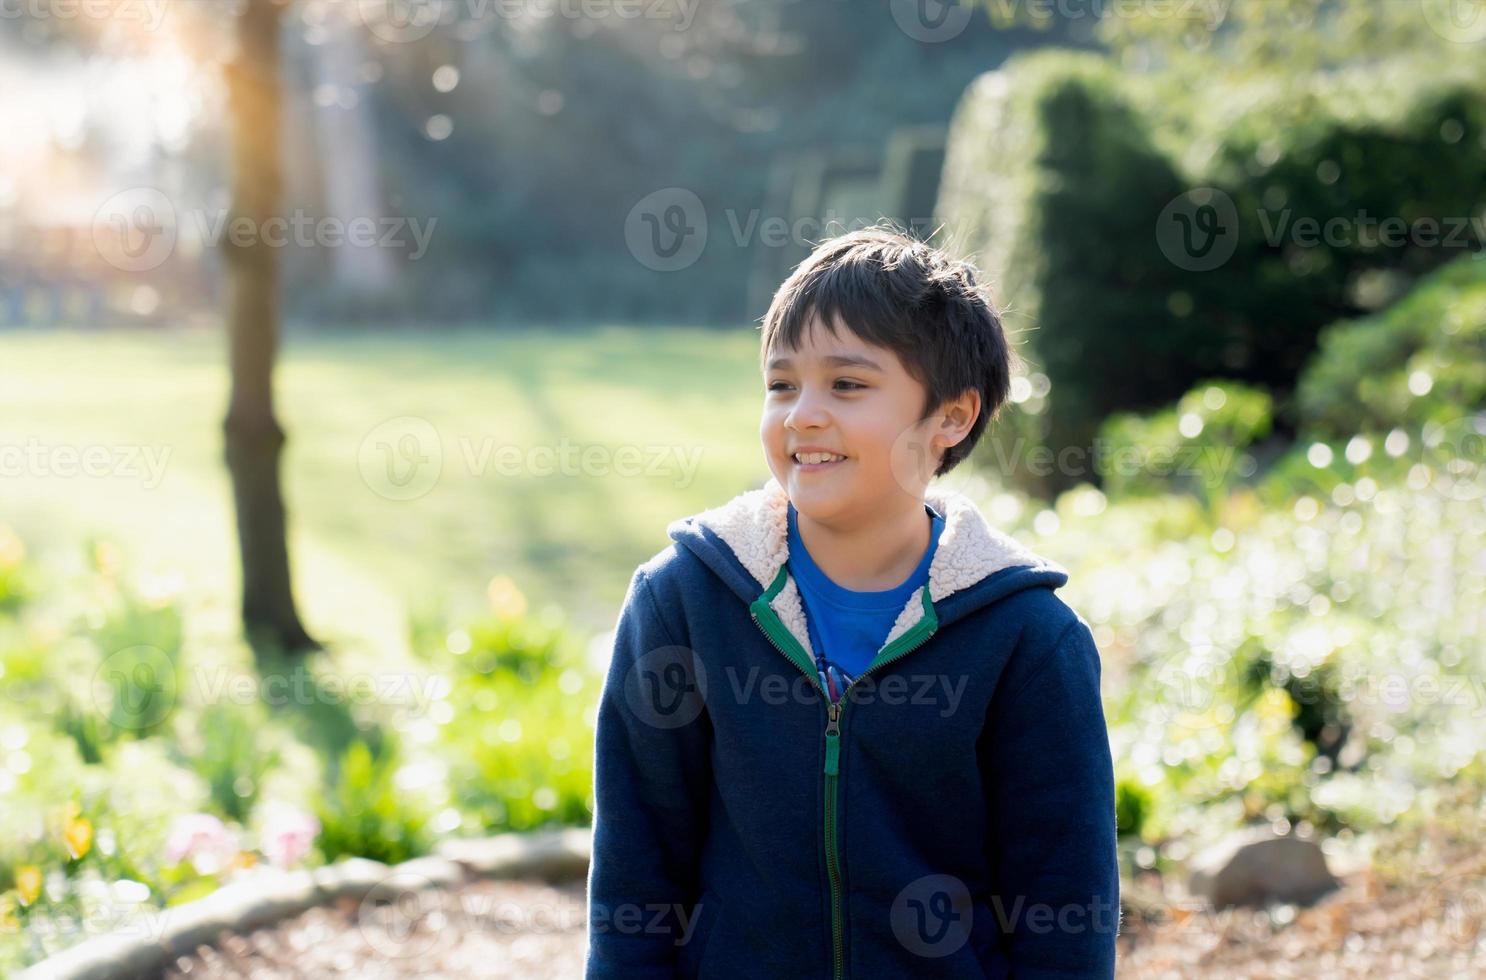 glücklicher kleiner junge, der draußen im garten spielt, porträtkind mit lächelndem gesicht spielt gerne morgens draußen, kind entspannt sich an einem sonnigen tag frühling oder sommer im park. foto